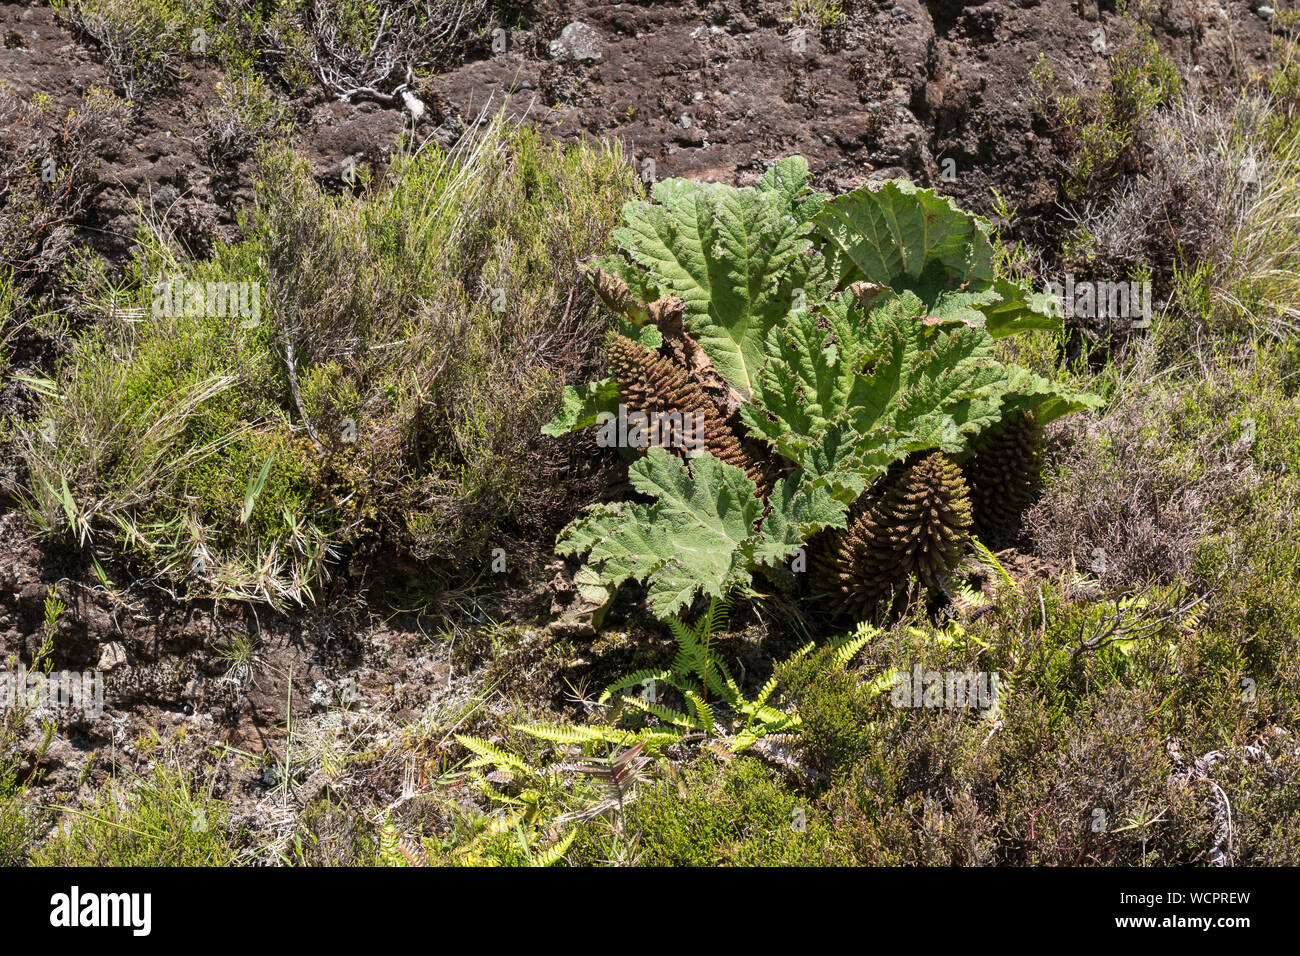 Grosse Blätter von gunnera Dolmetsch, wächst wild in der Natur unter anderem Pflanzen. Sao Miguel, Azoren, Portugal. Stockfoto